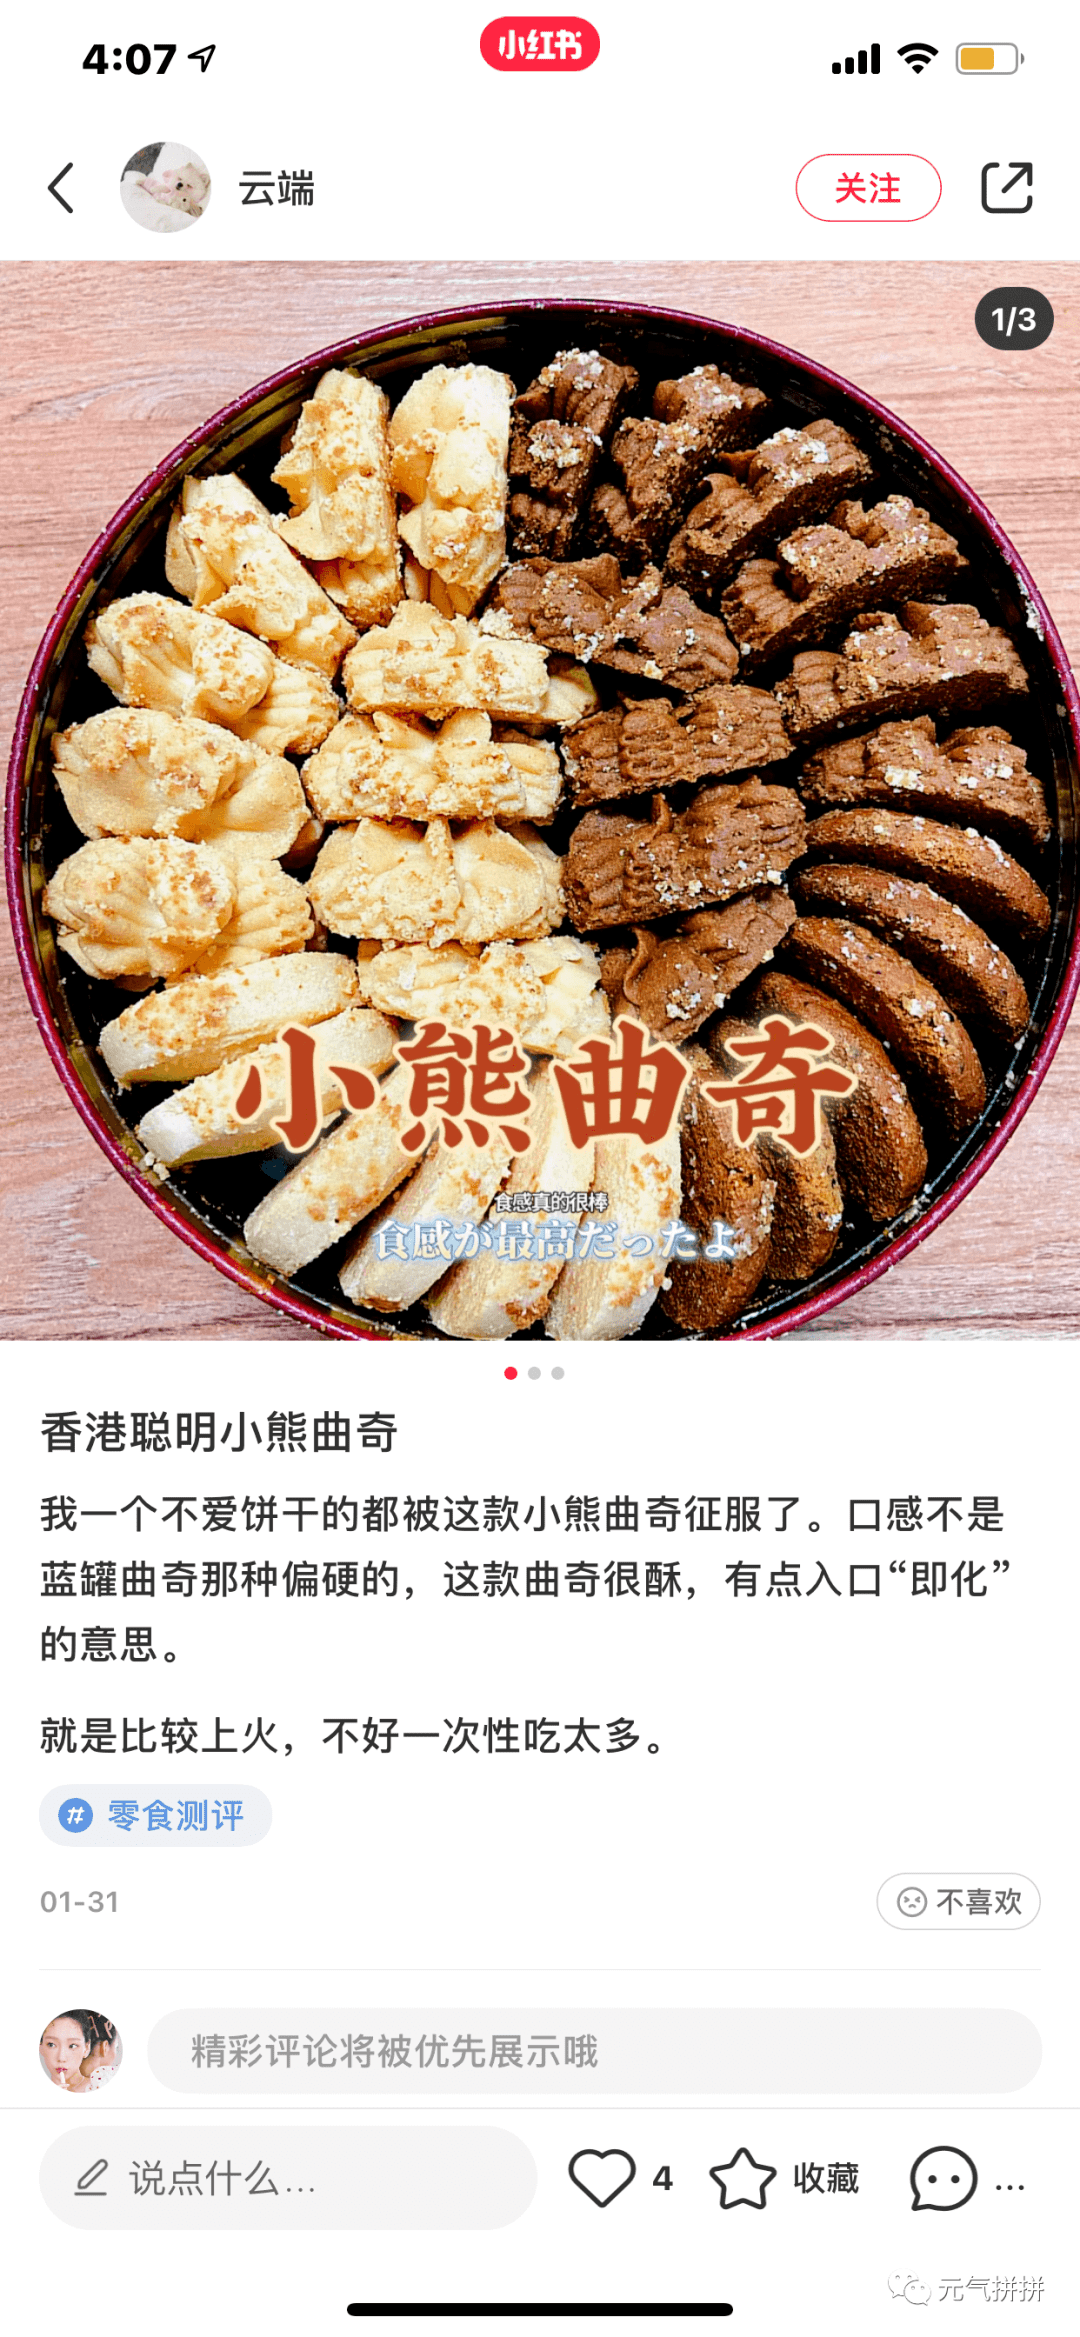 香港珍妮曲奇在内地已经更名为「香港聪明小熊曲奇饼干」为了防伪